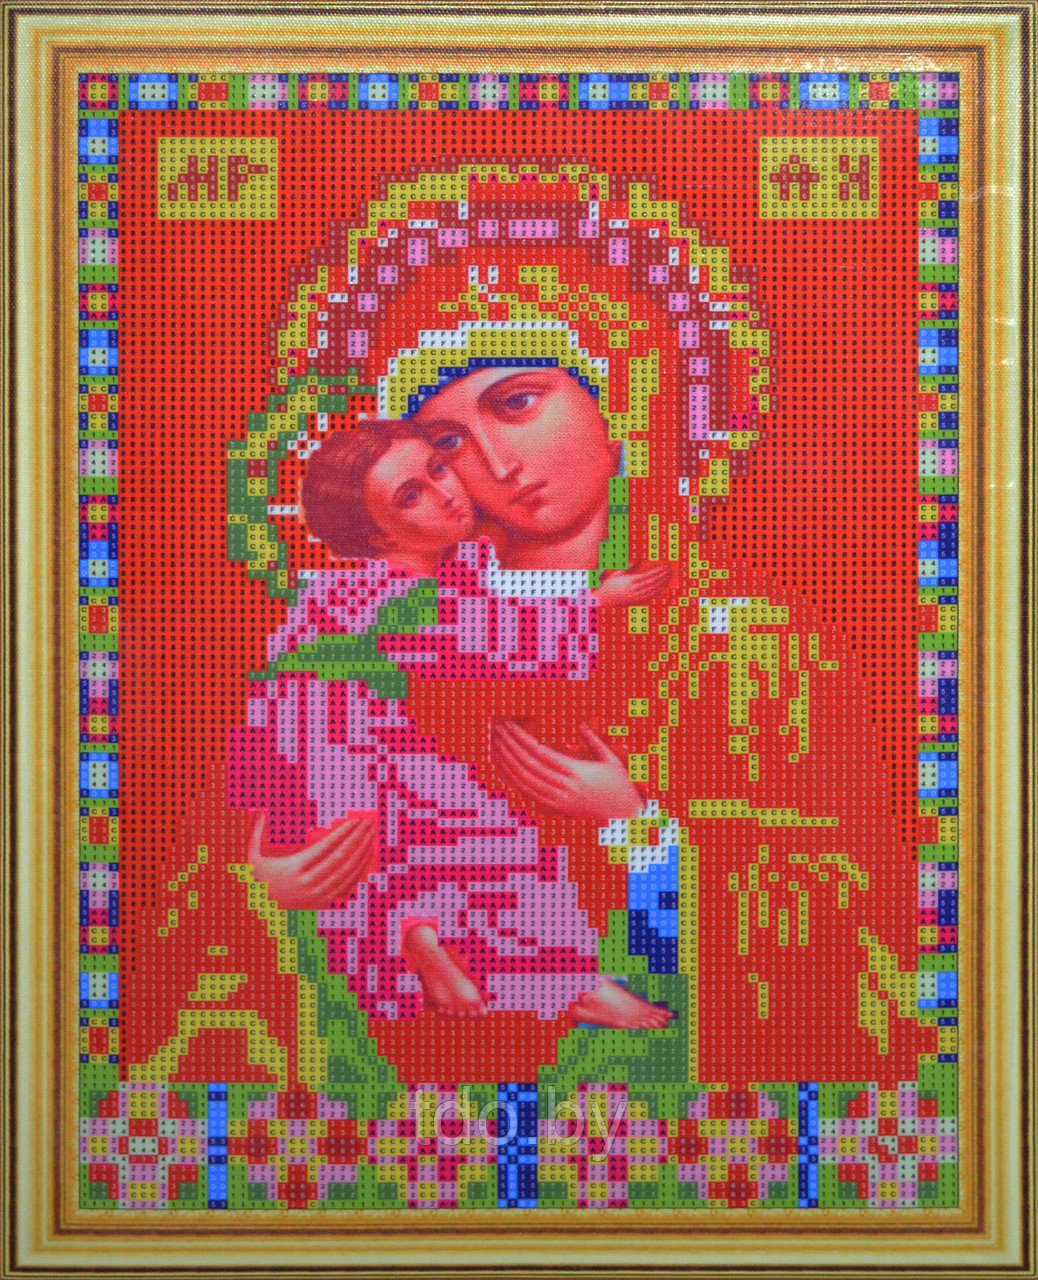 Алмазная мозаика на подрамнике 30х40 см. Икона Пресвятая Богородица Владимирская